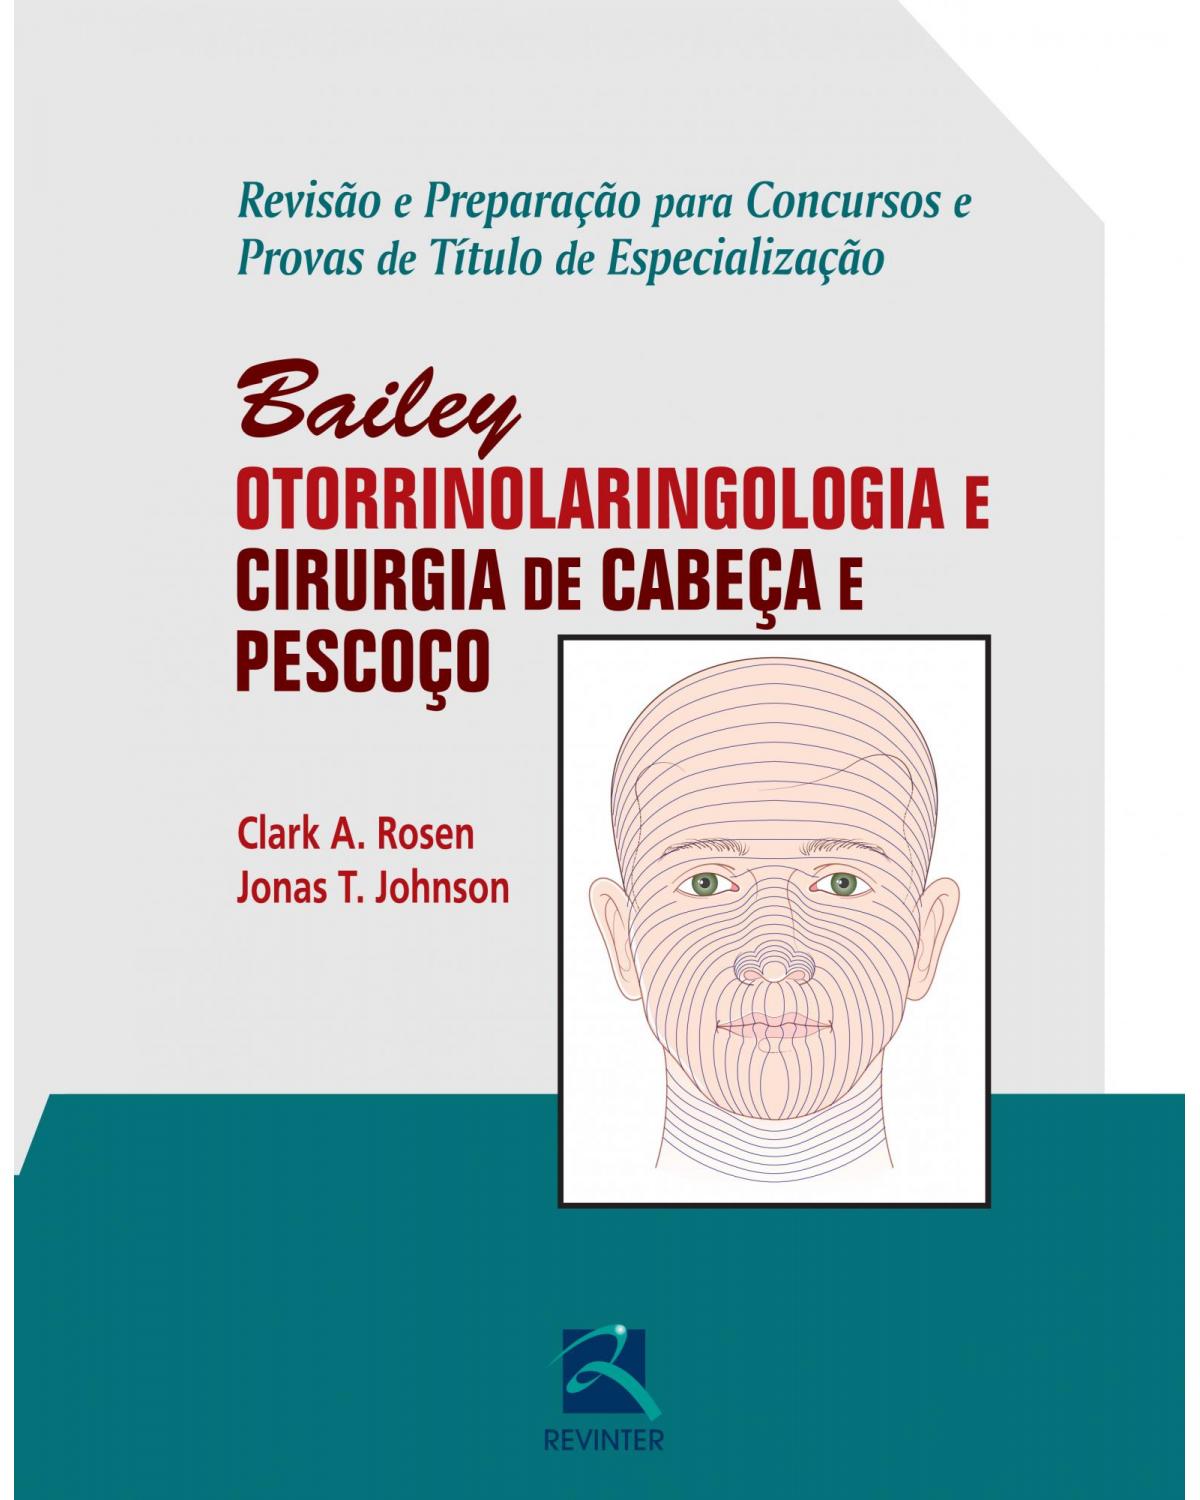 Bailey - Otorrinolaringologia e cirurgia de cabeça e pescoço: Revisão e preparação para concursos e provas de título de especialização - 1ª Edição